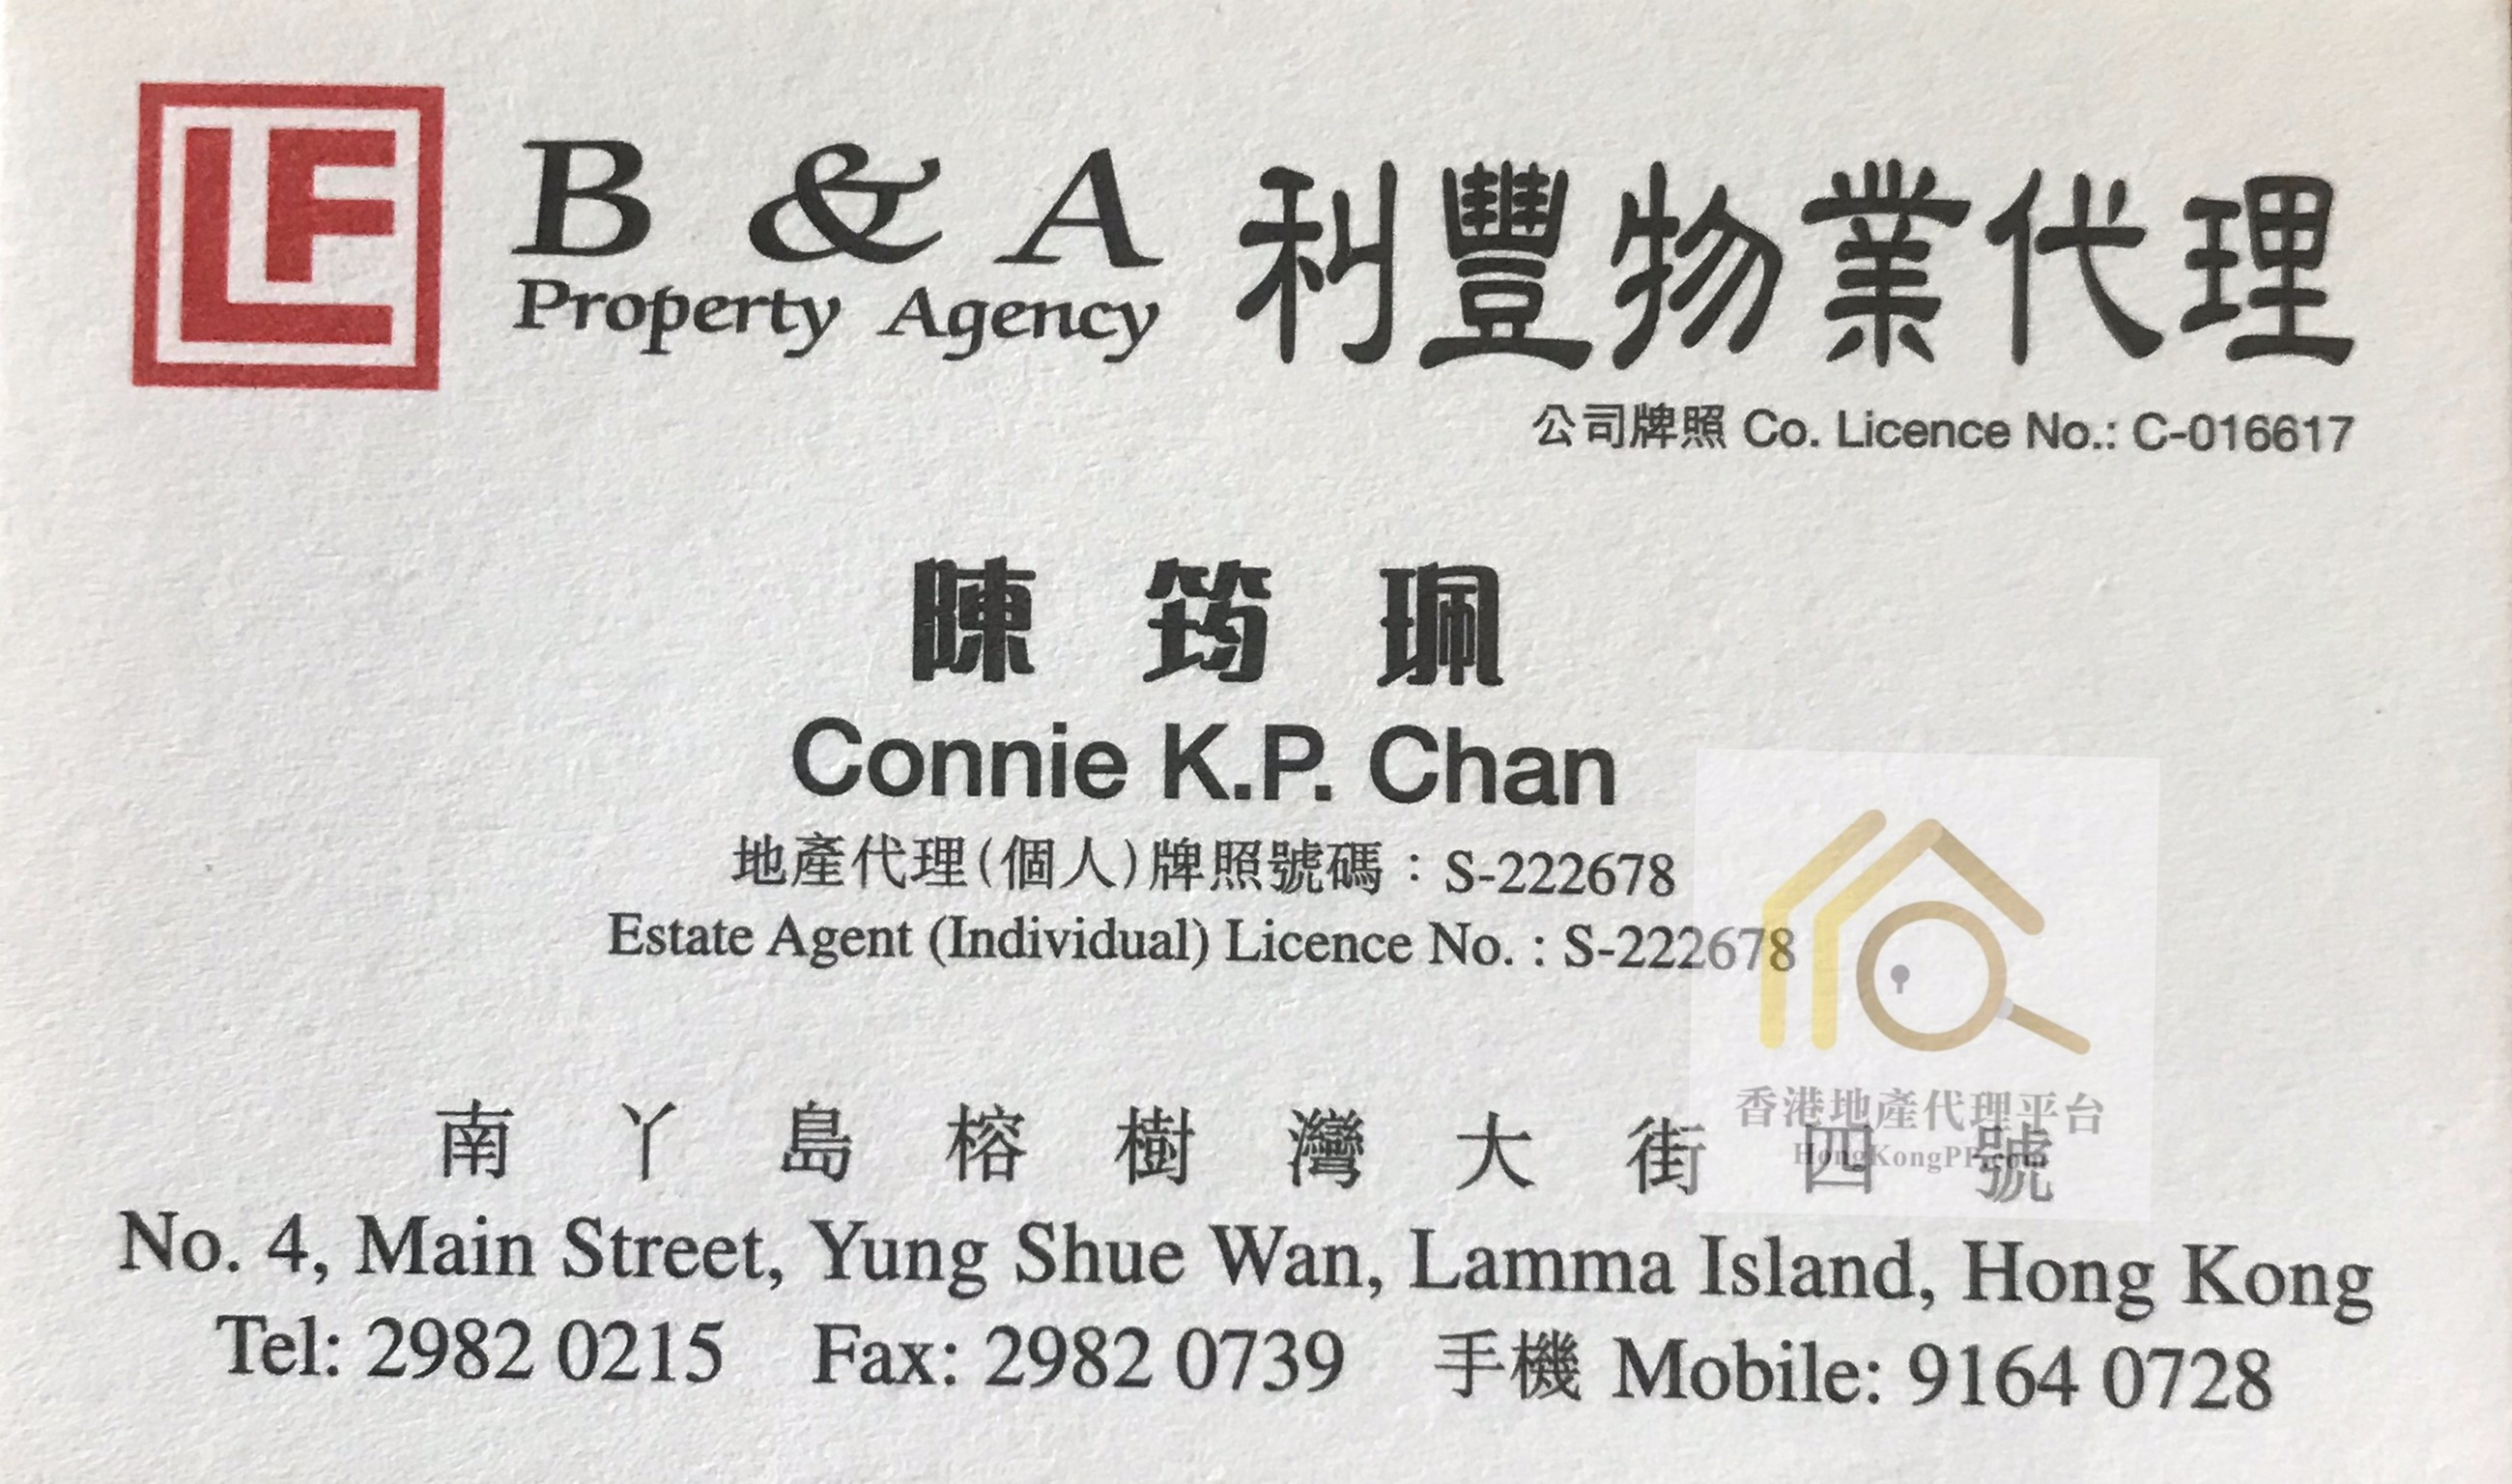 地產代理公司: B & A Property Agency